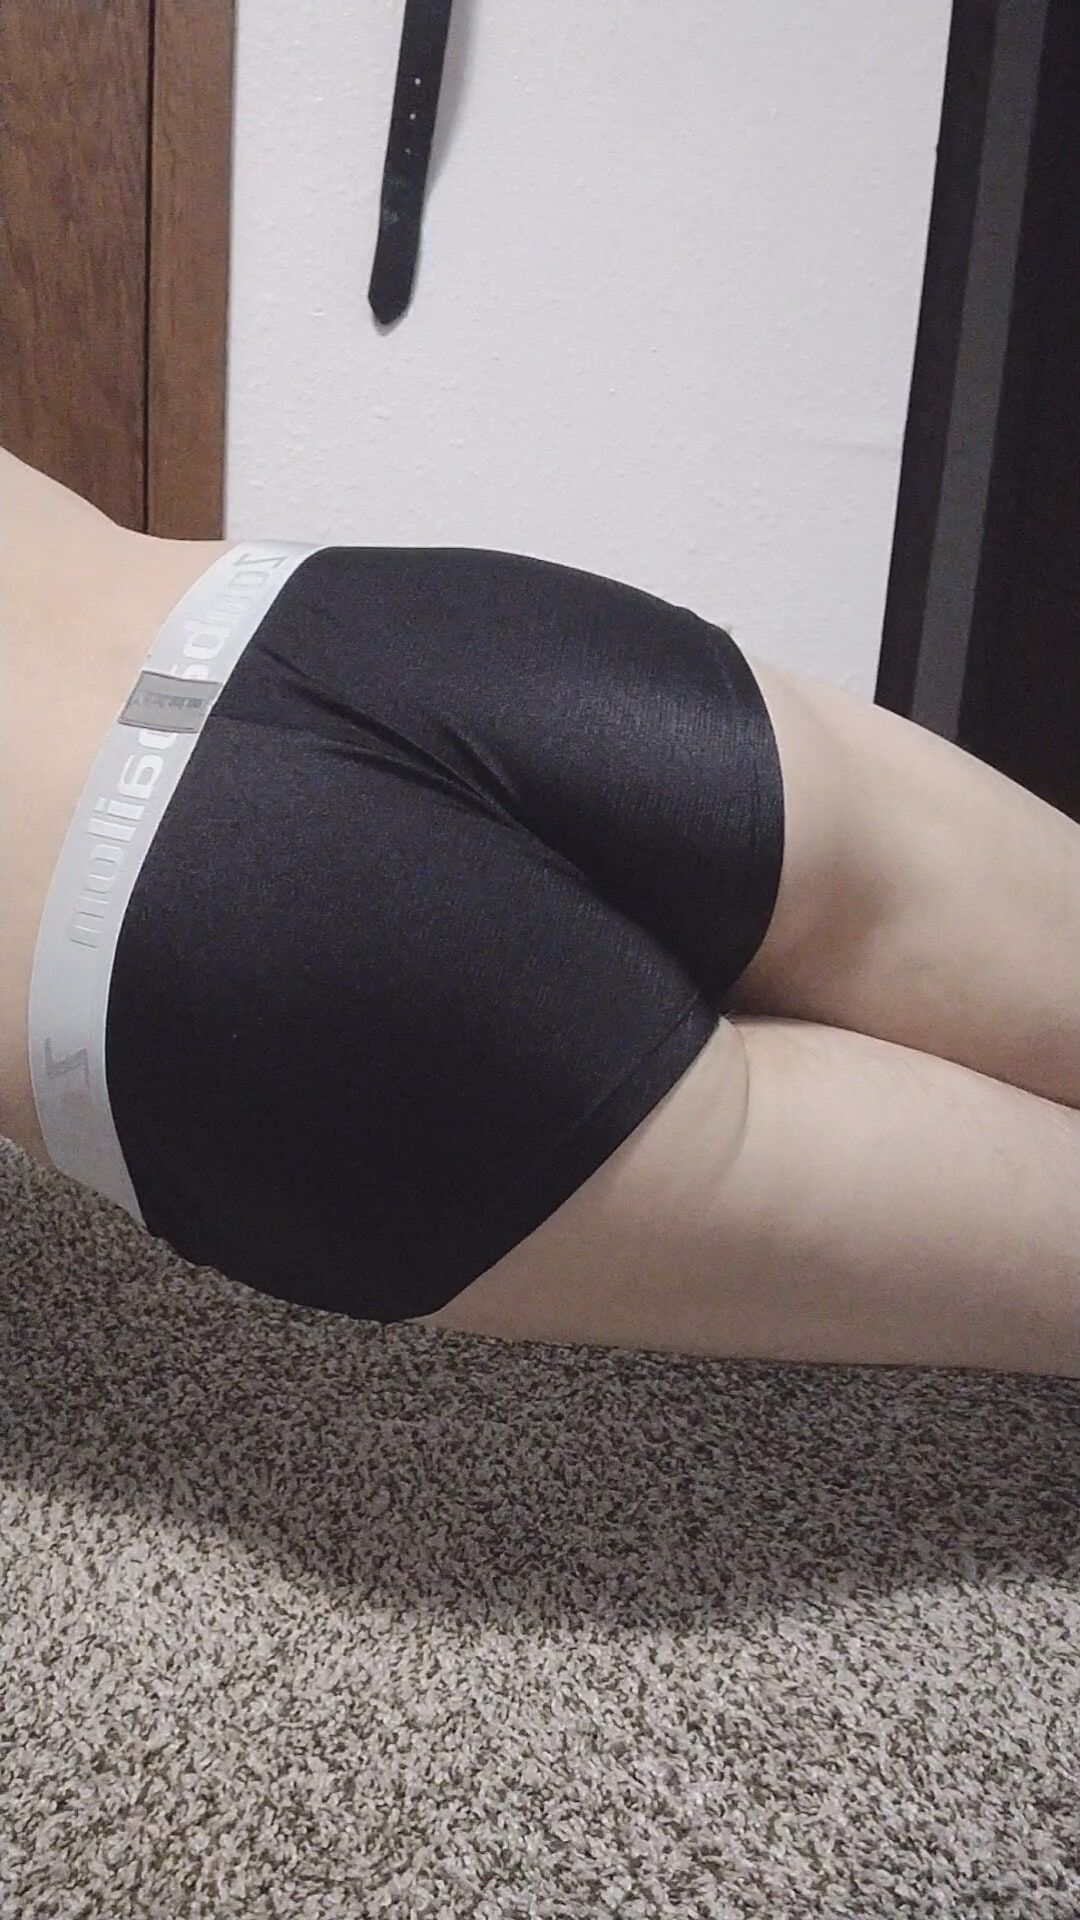 Nice ass